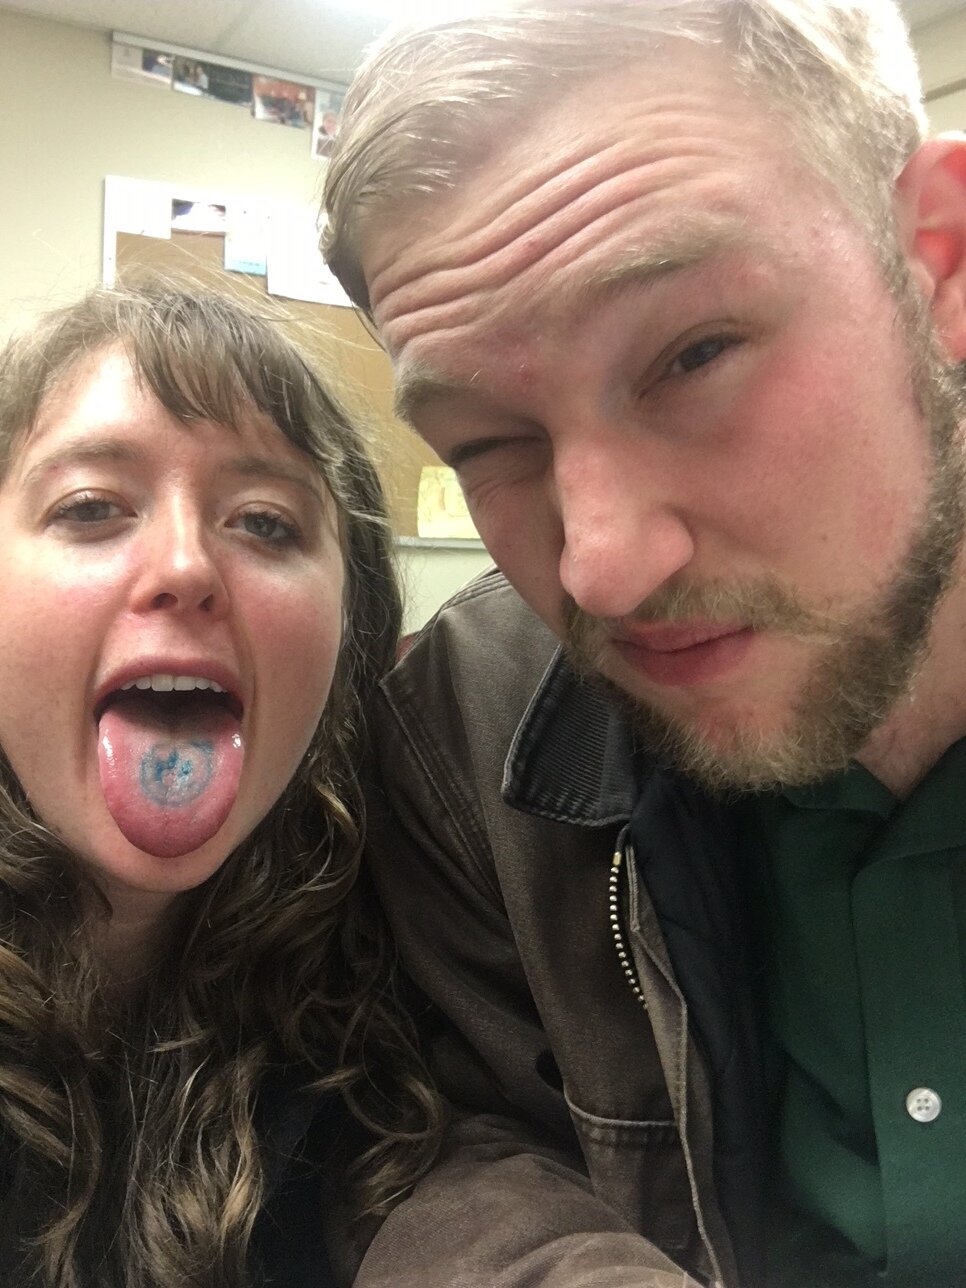 Tongue tattoo (jkjkjk)!